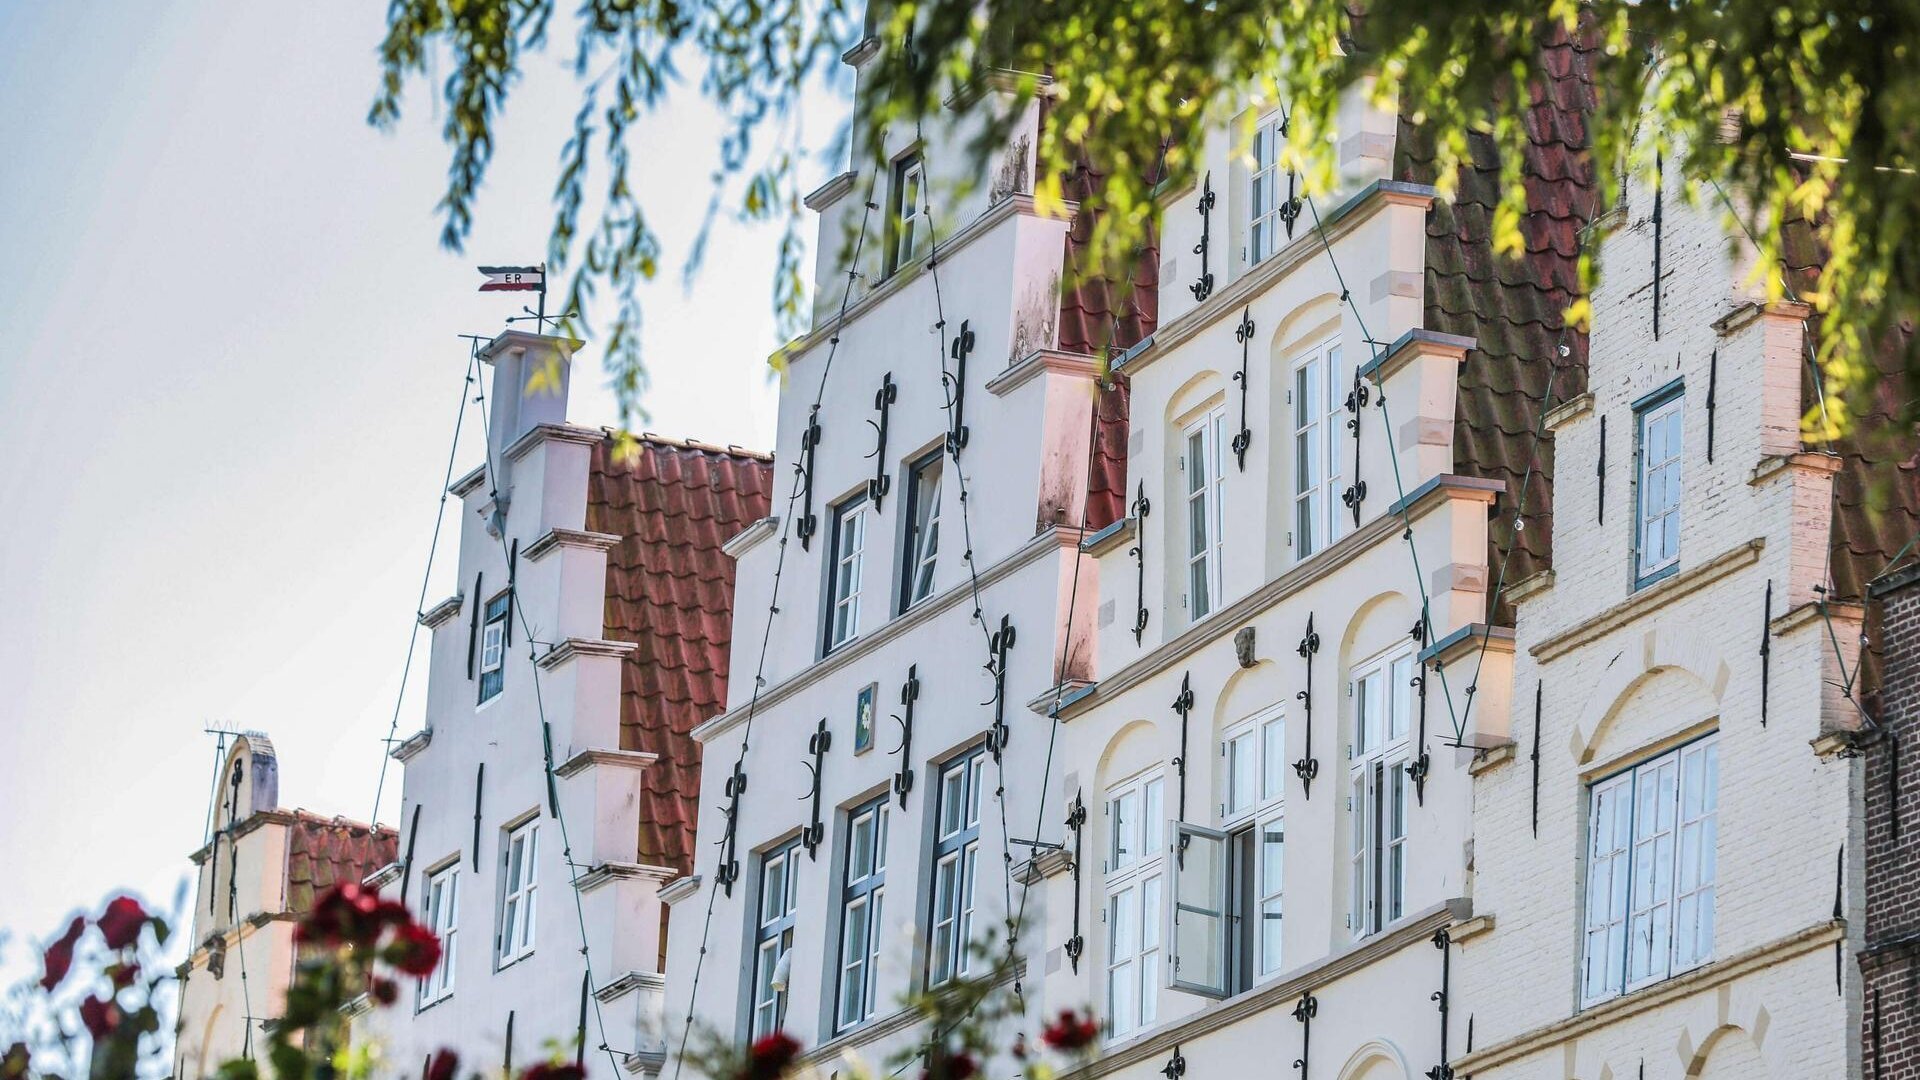 Treppengiebel der Häuserfassade in Friedrichstadt